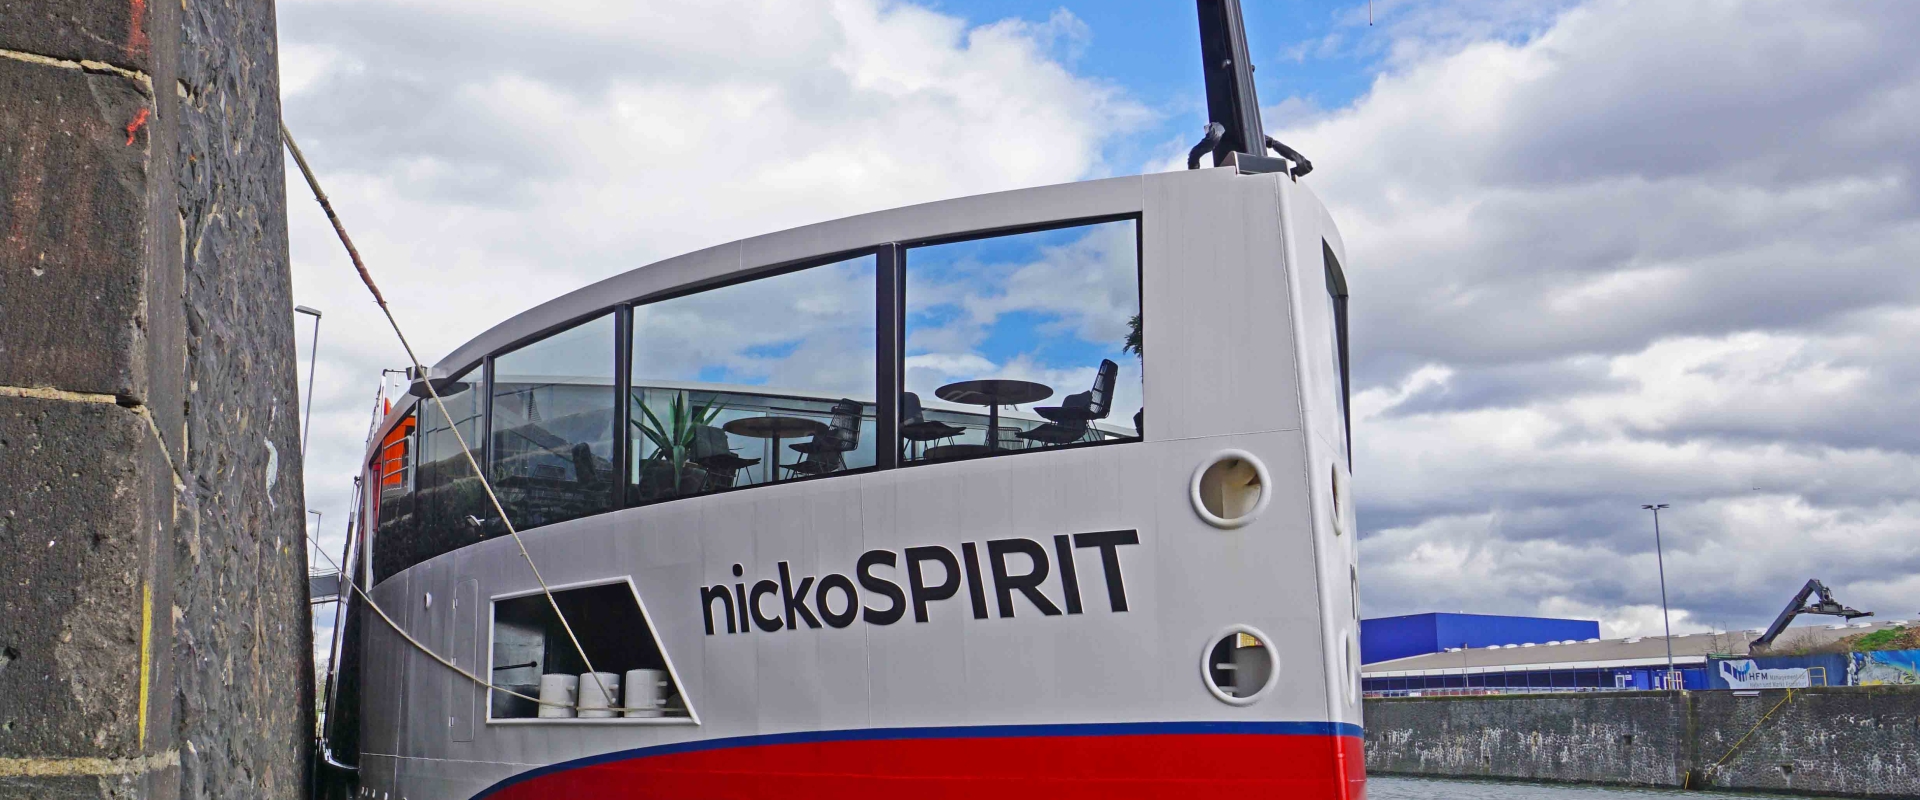 MS nickoSPIRIT of nicko cruises YouDinner